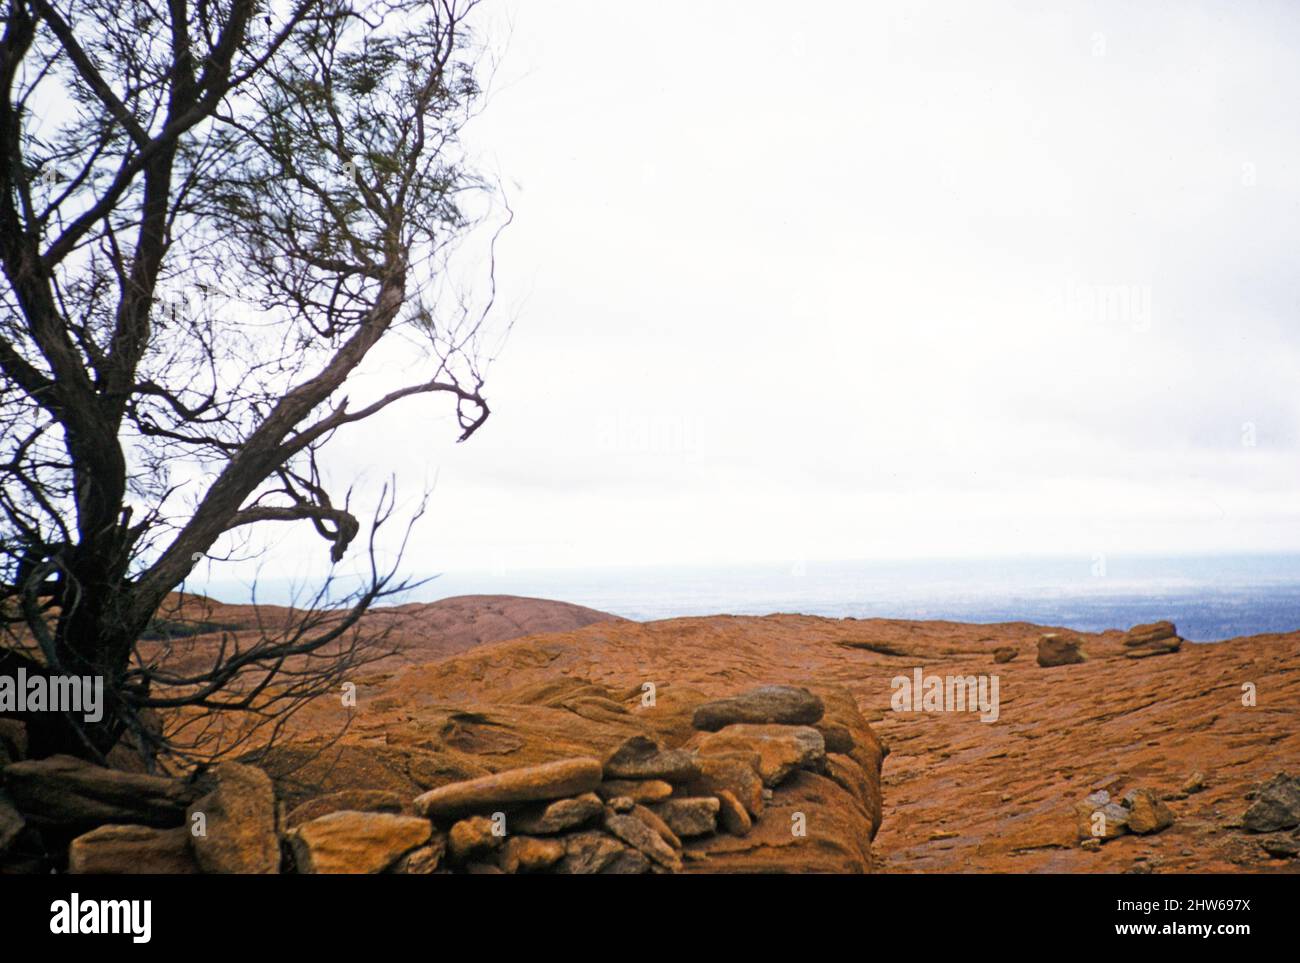 Melbourne Grammar School Expedition, Northern Territory, Australien in 1956 Baum und felsige Oberfläche auf Ayers Rock, Uluru Stockfoto